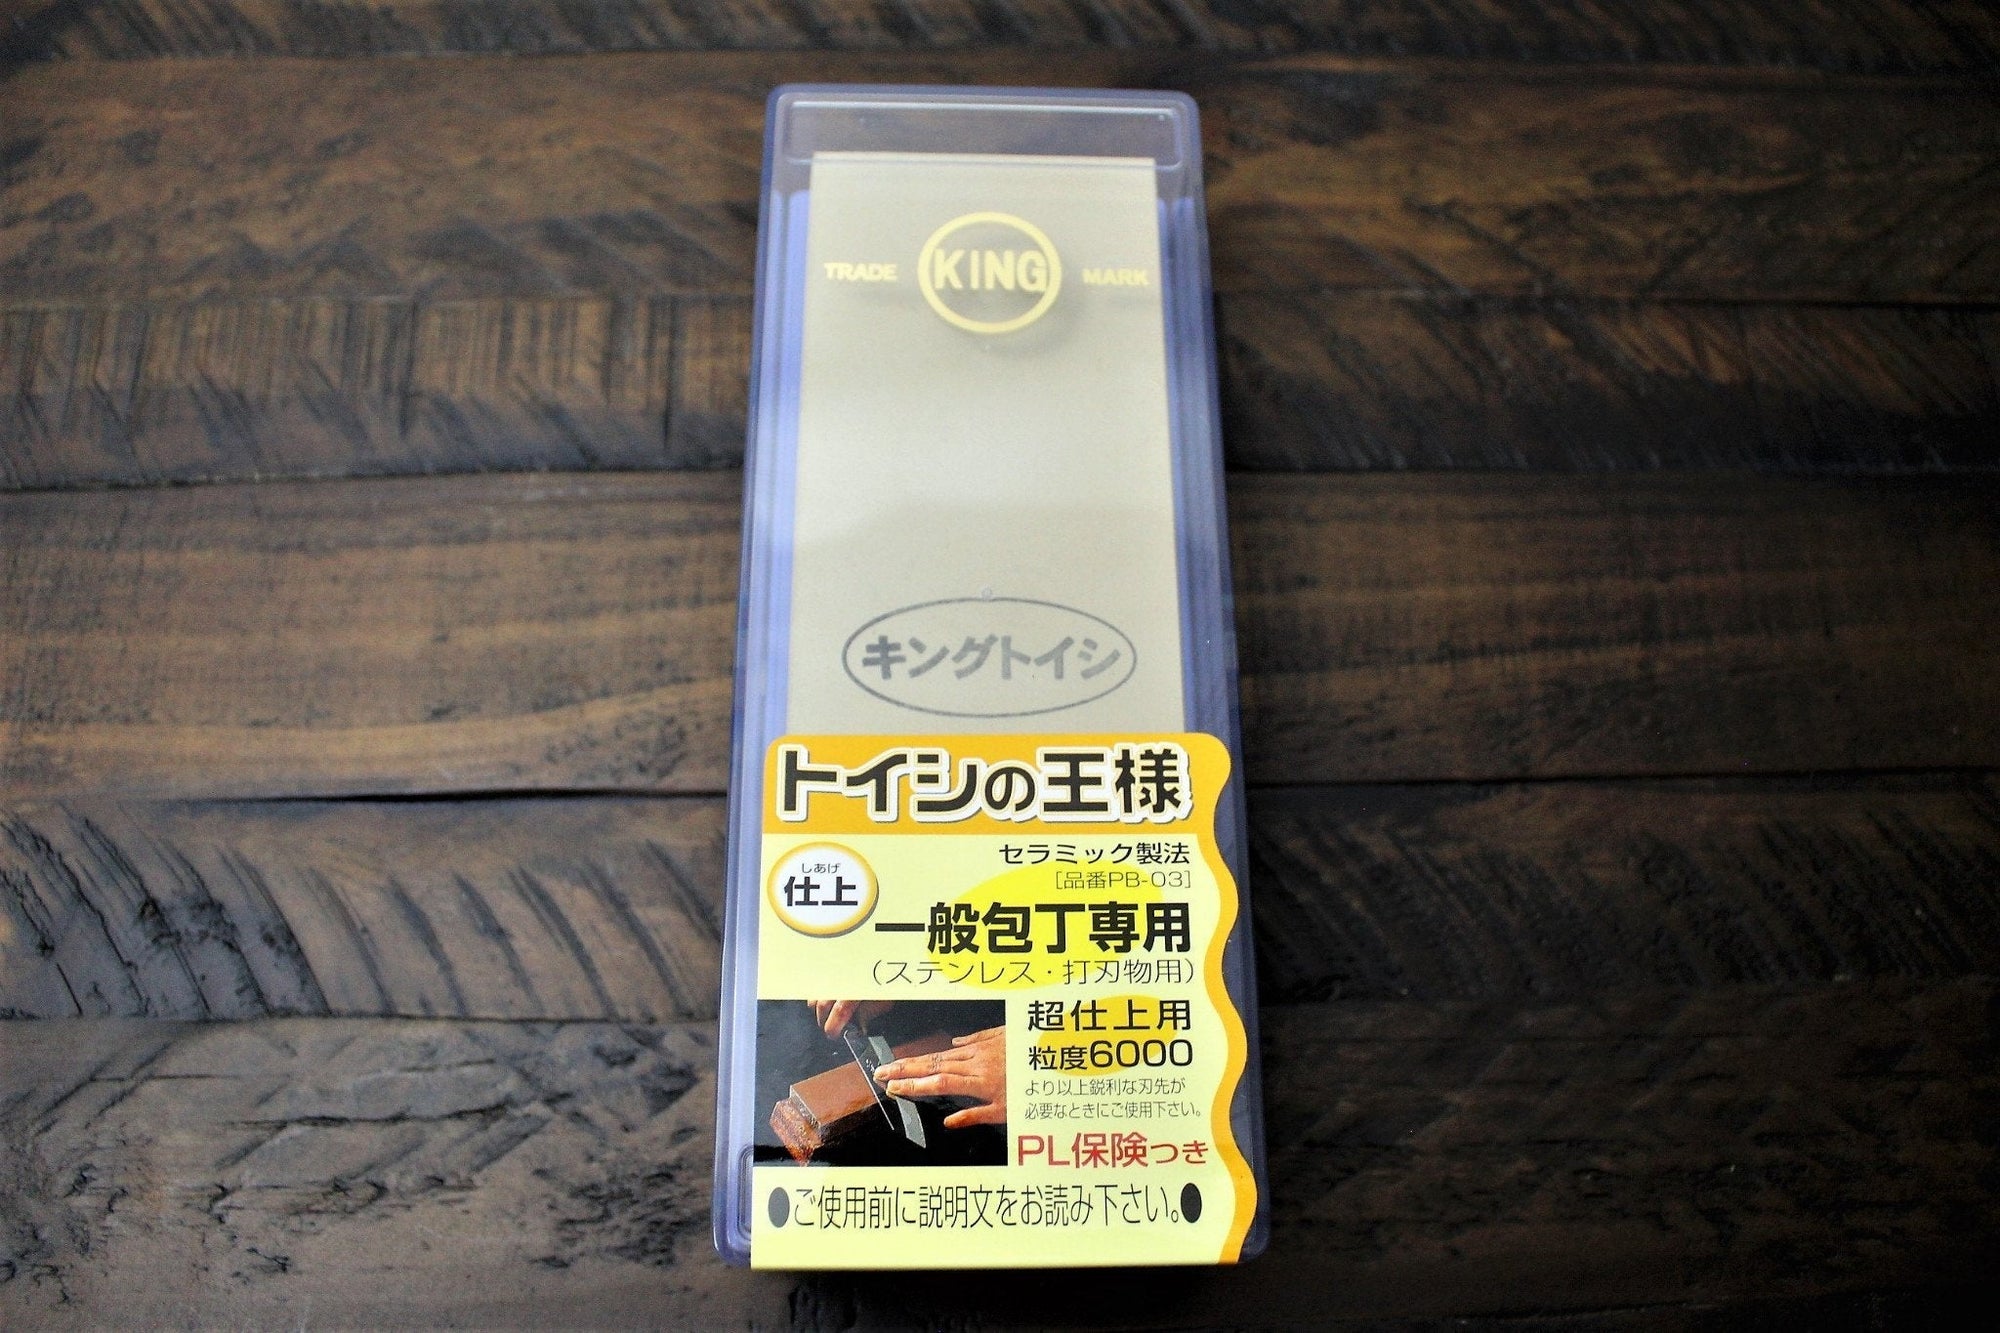 Accessories - Japanese Whetstone (Toishi) With Base - Grit 6000 (Finishing Whetstone)